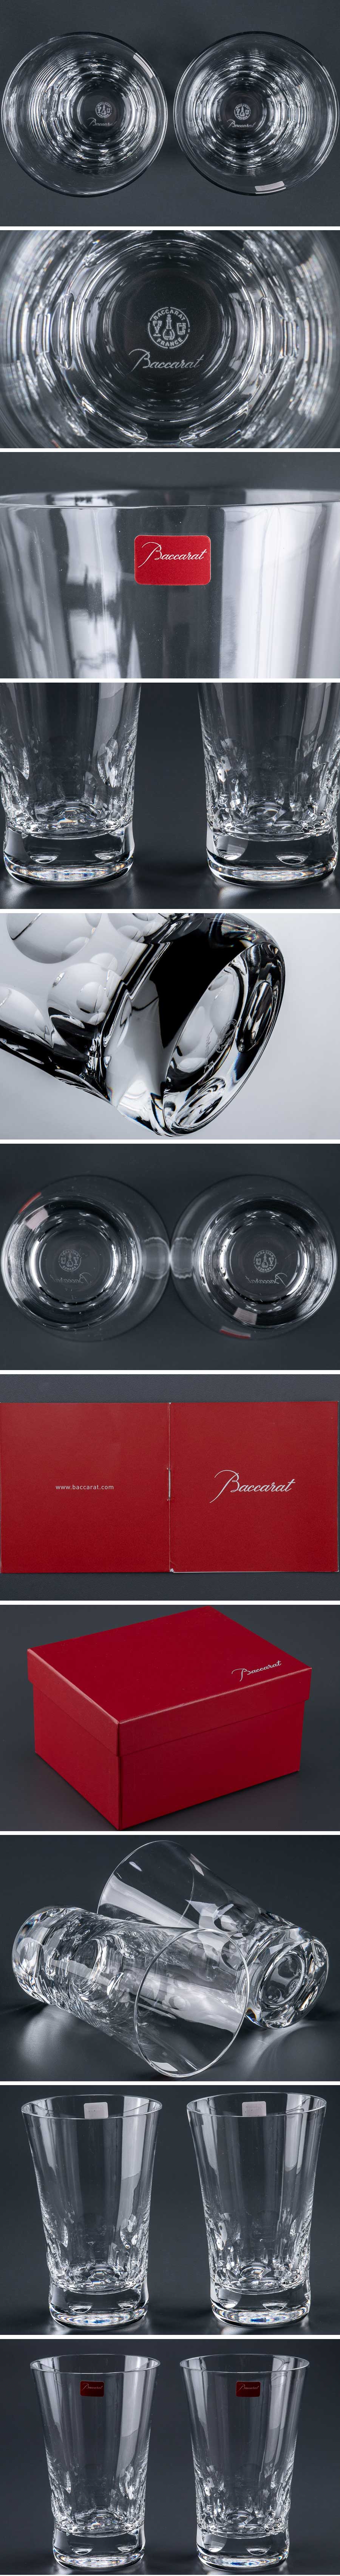 割30%『 バカラ baccarat 「 ベルーガ 」 タンブラー グラス 2客 箱付 9929 』 2個組 洋食器 ブランド テーブルウェア クリスタルガラス 工芸ガラス